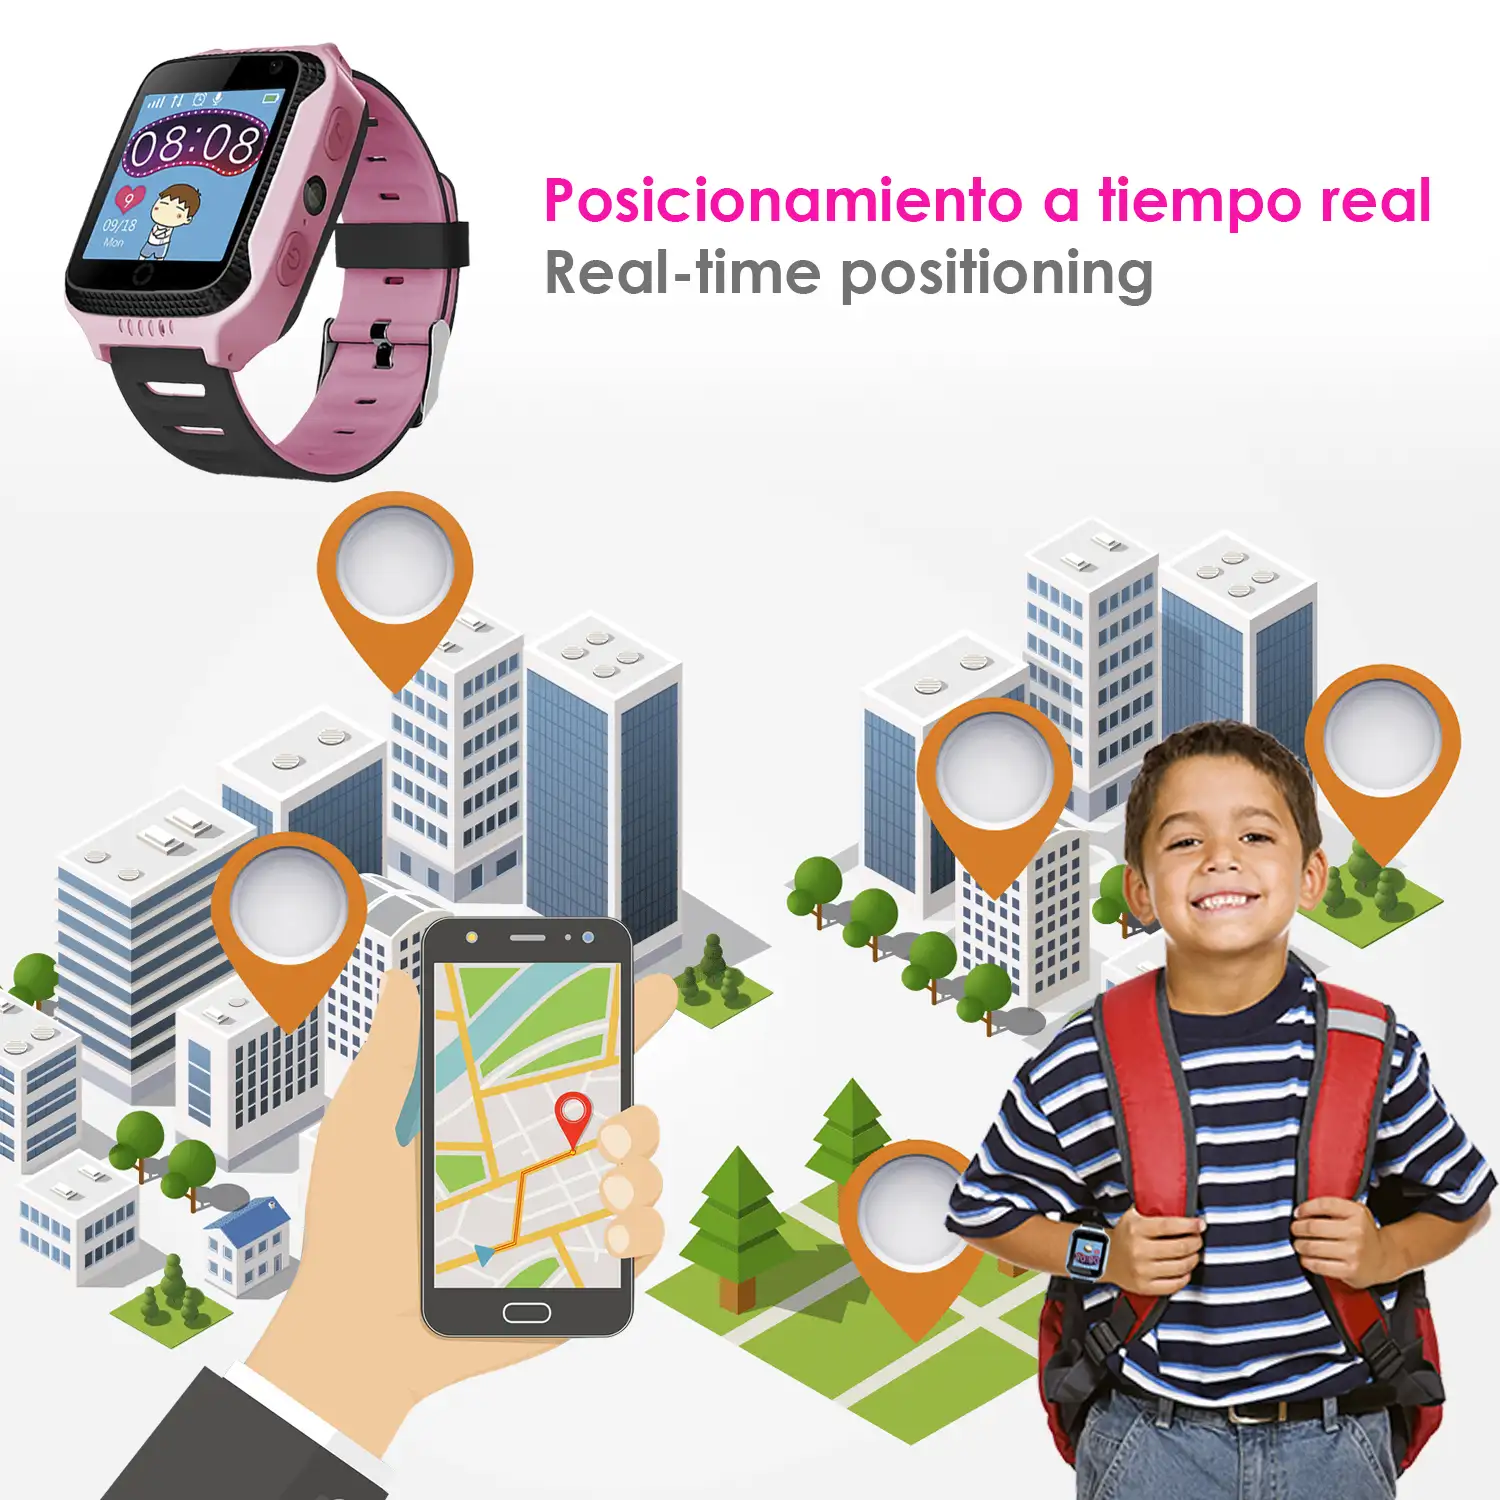 Smartwatch GPS especial para niños, con cámara, función de rastreo, llamadas SOS y recepción de llamada